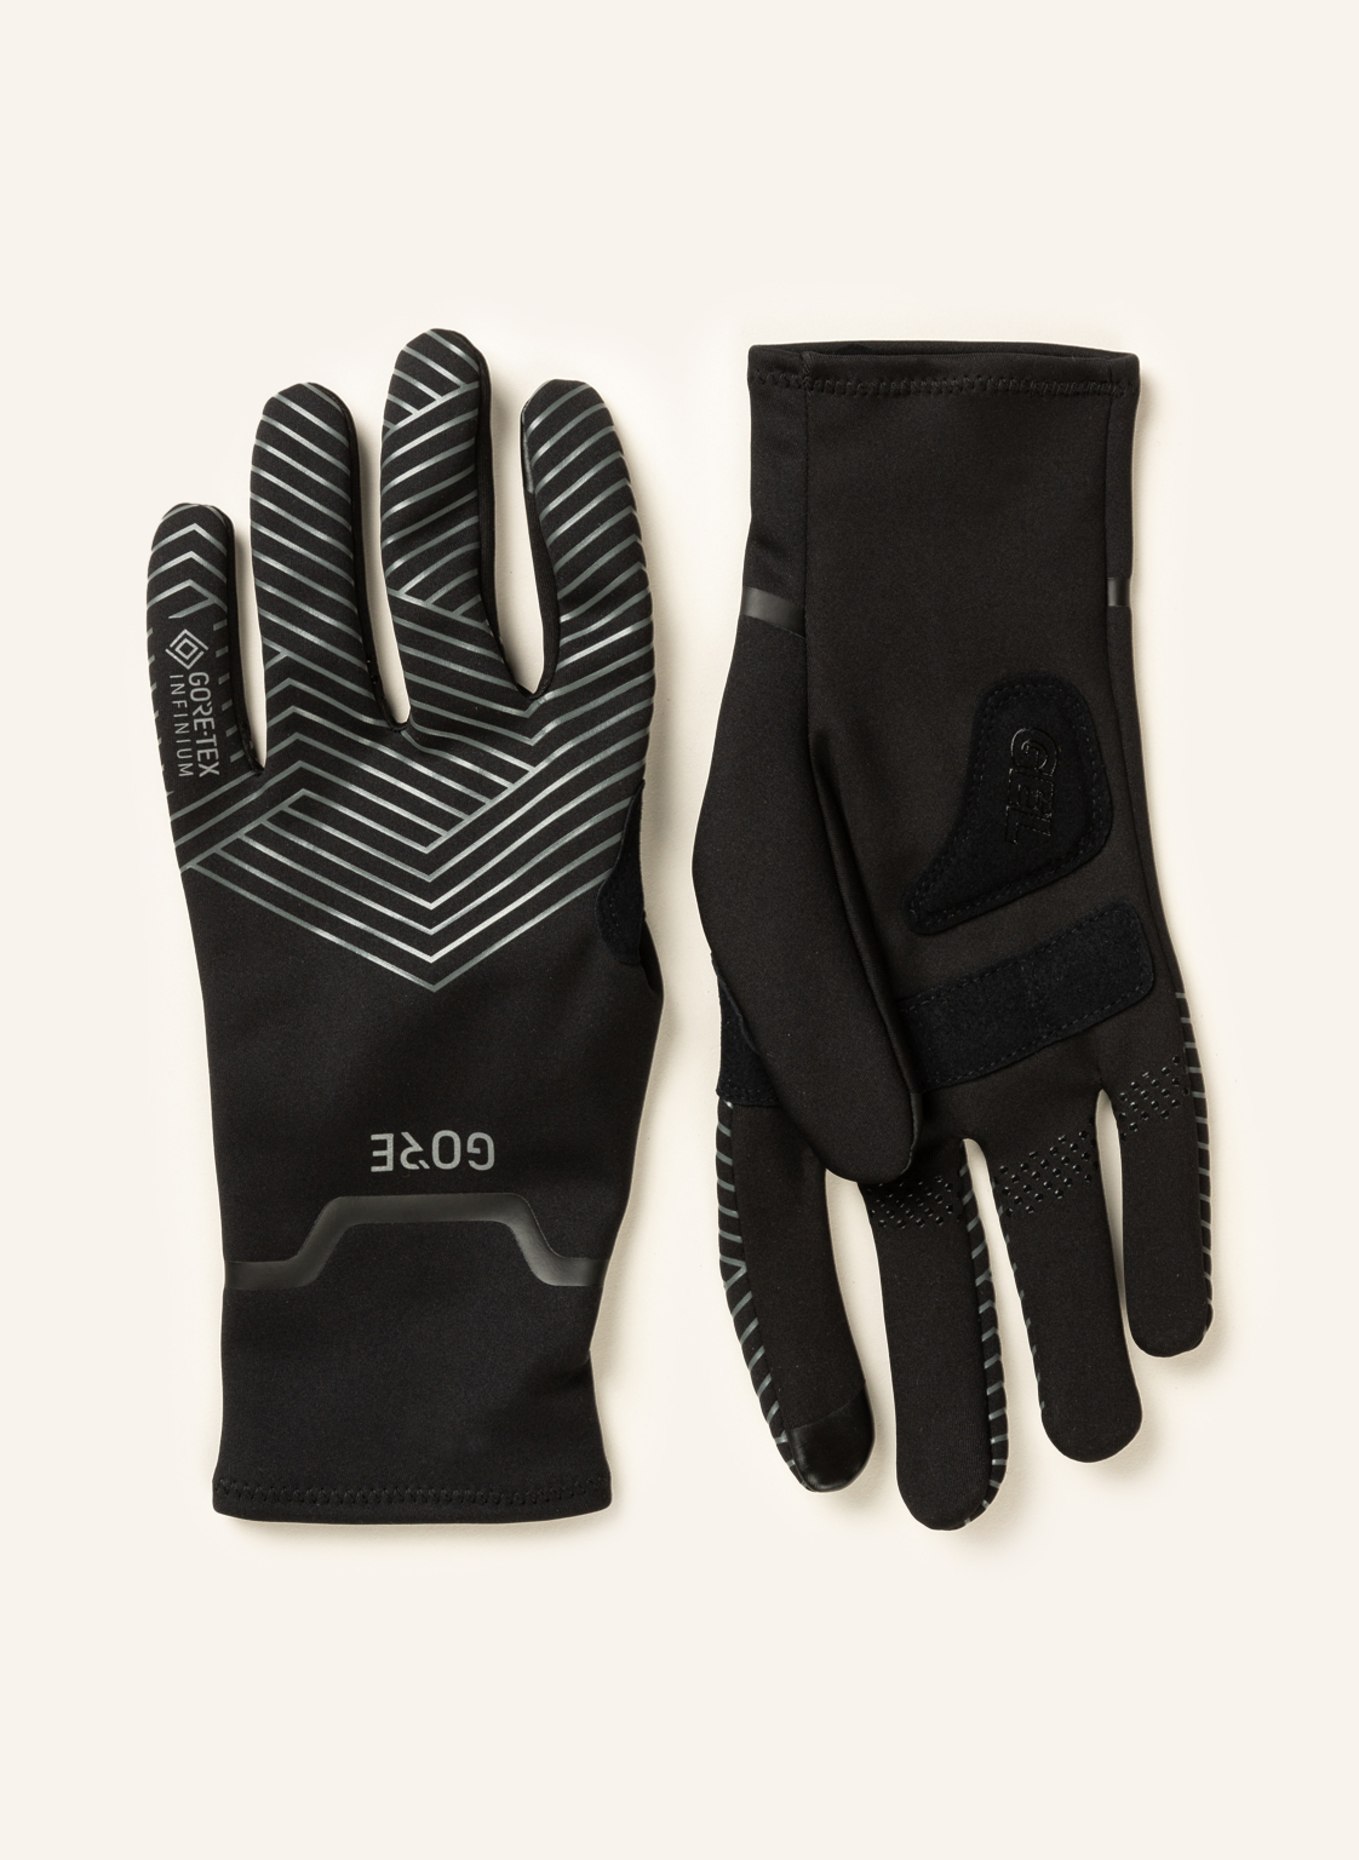 WEAR Cycling gloves in black GORE BIKE C3